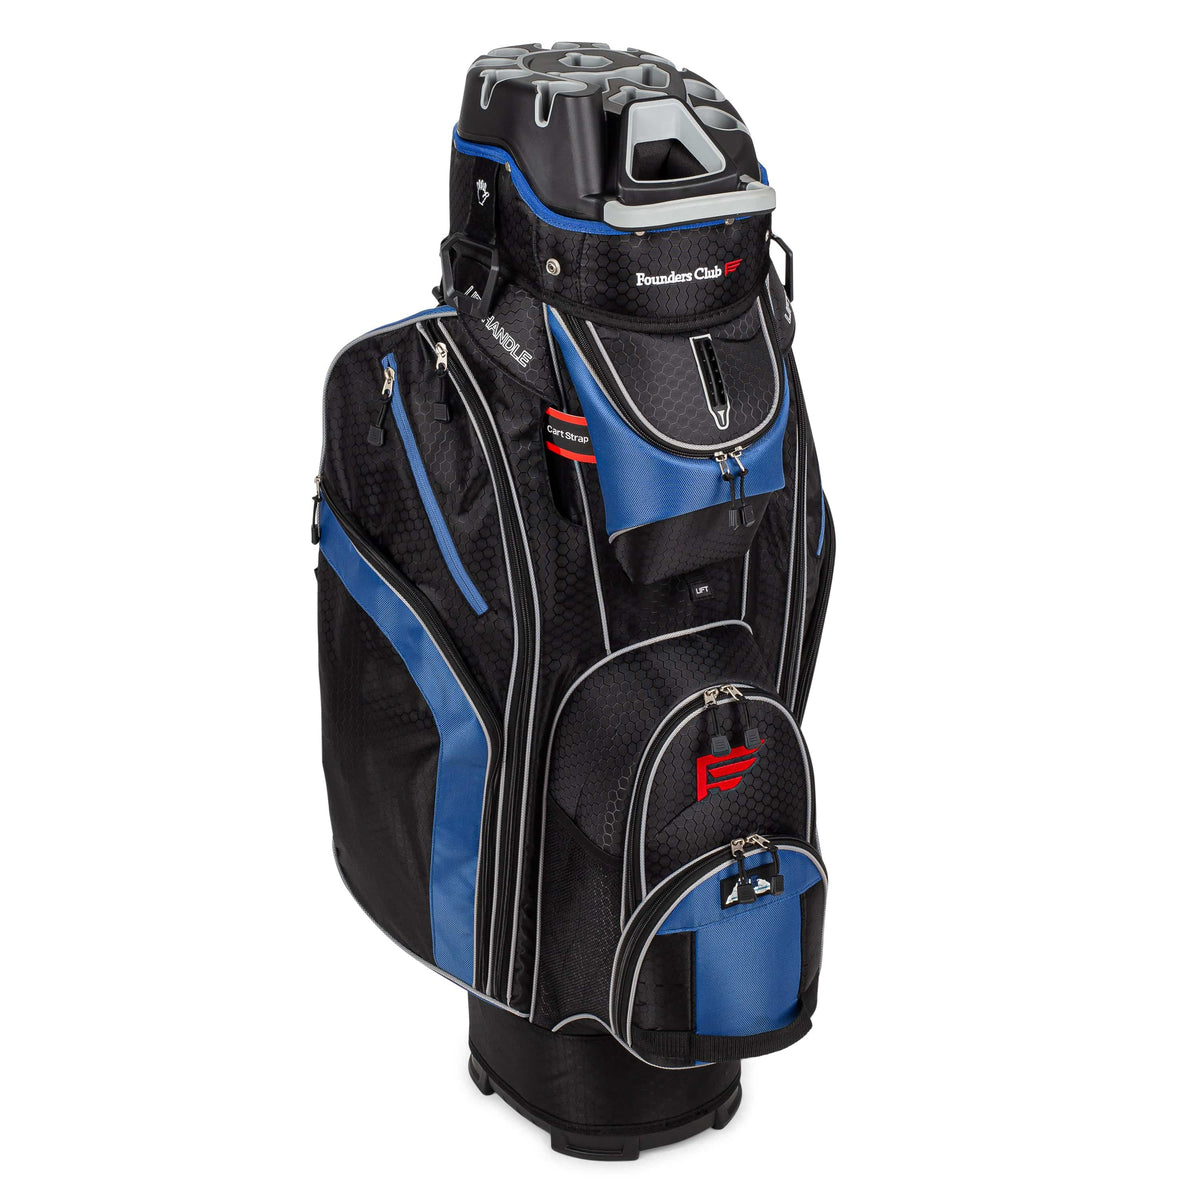 Founders Club 3rd Generation Premium Organizer 14 Way Golf Cart Bag - Blue